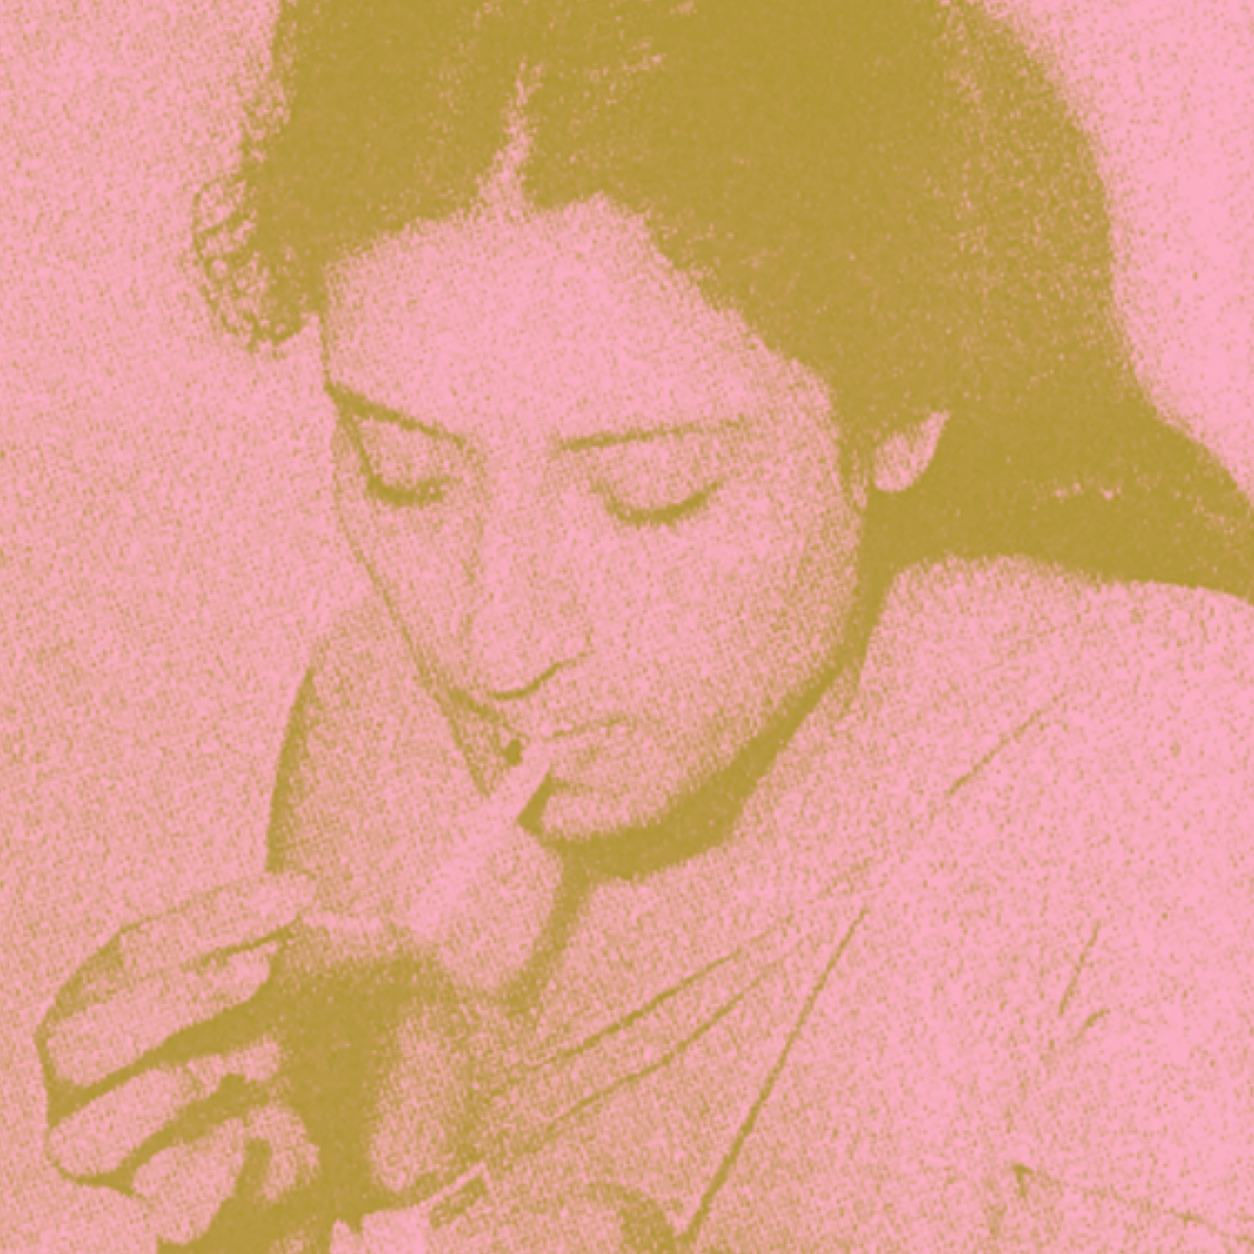 Fahmida Riaz